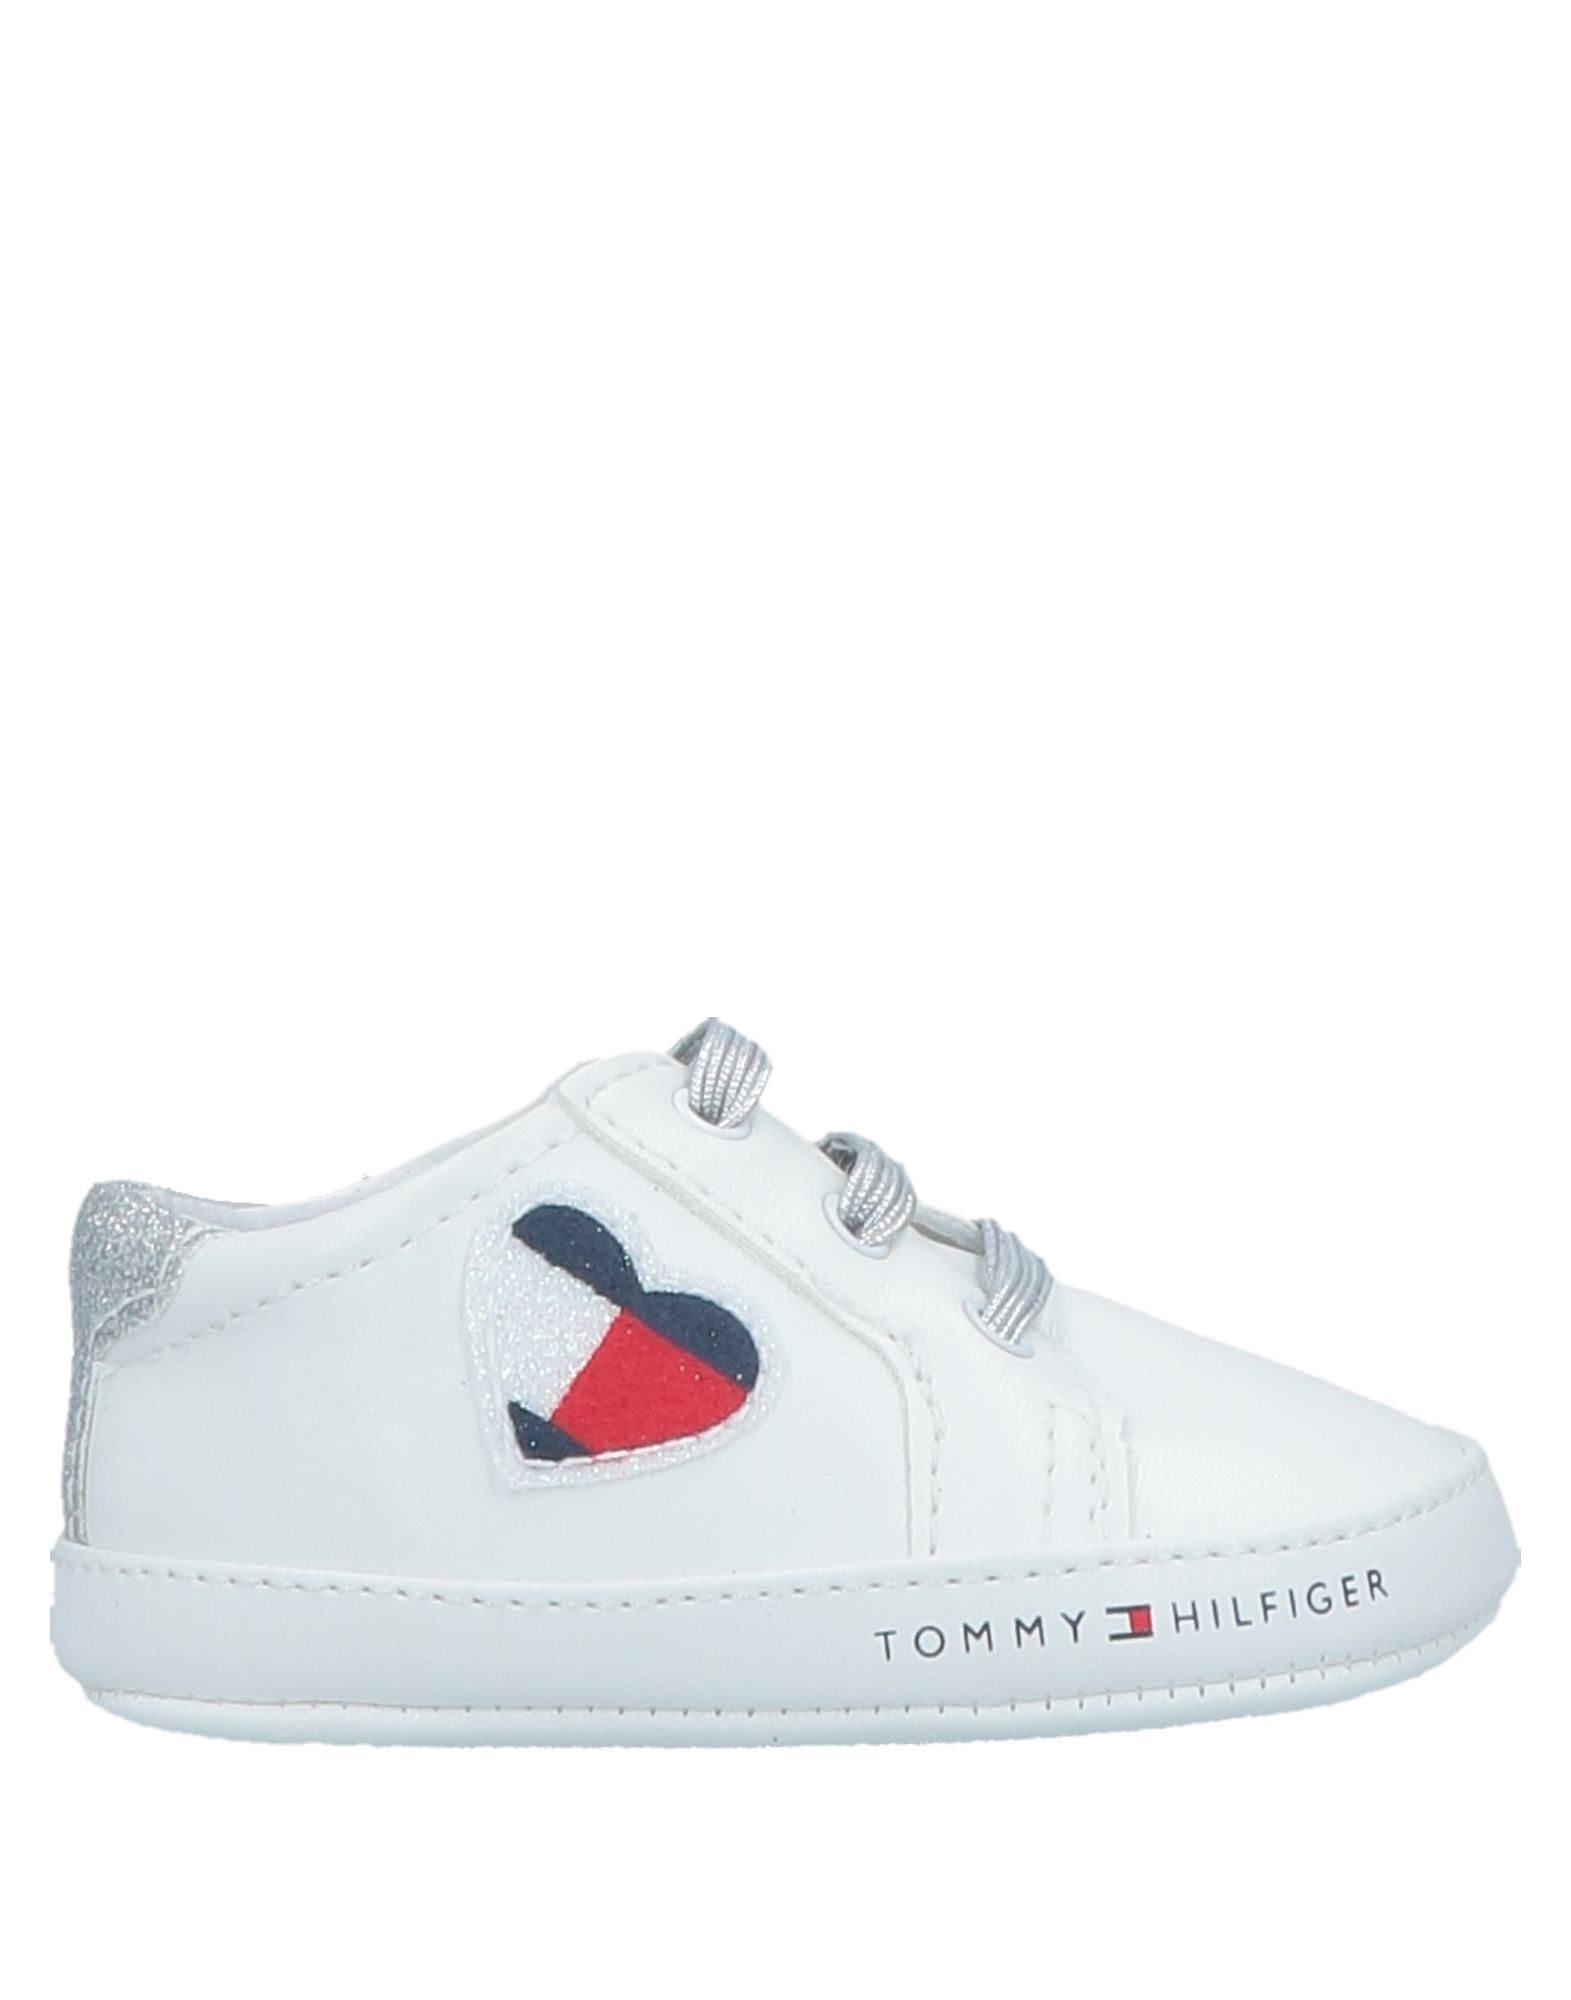 TOMMY HILFIGER Обувь для новорожденных